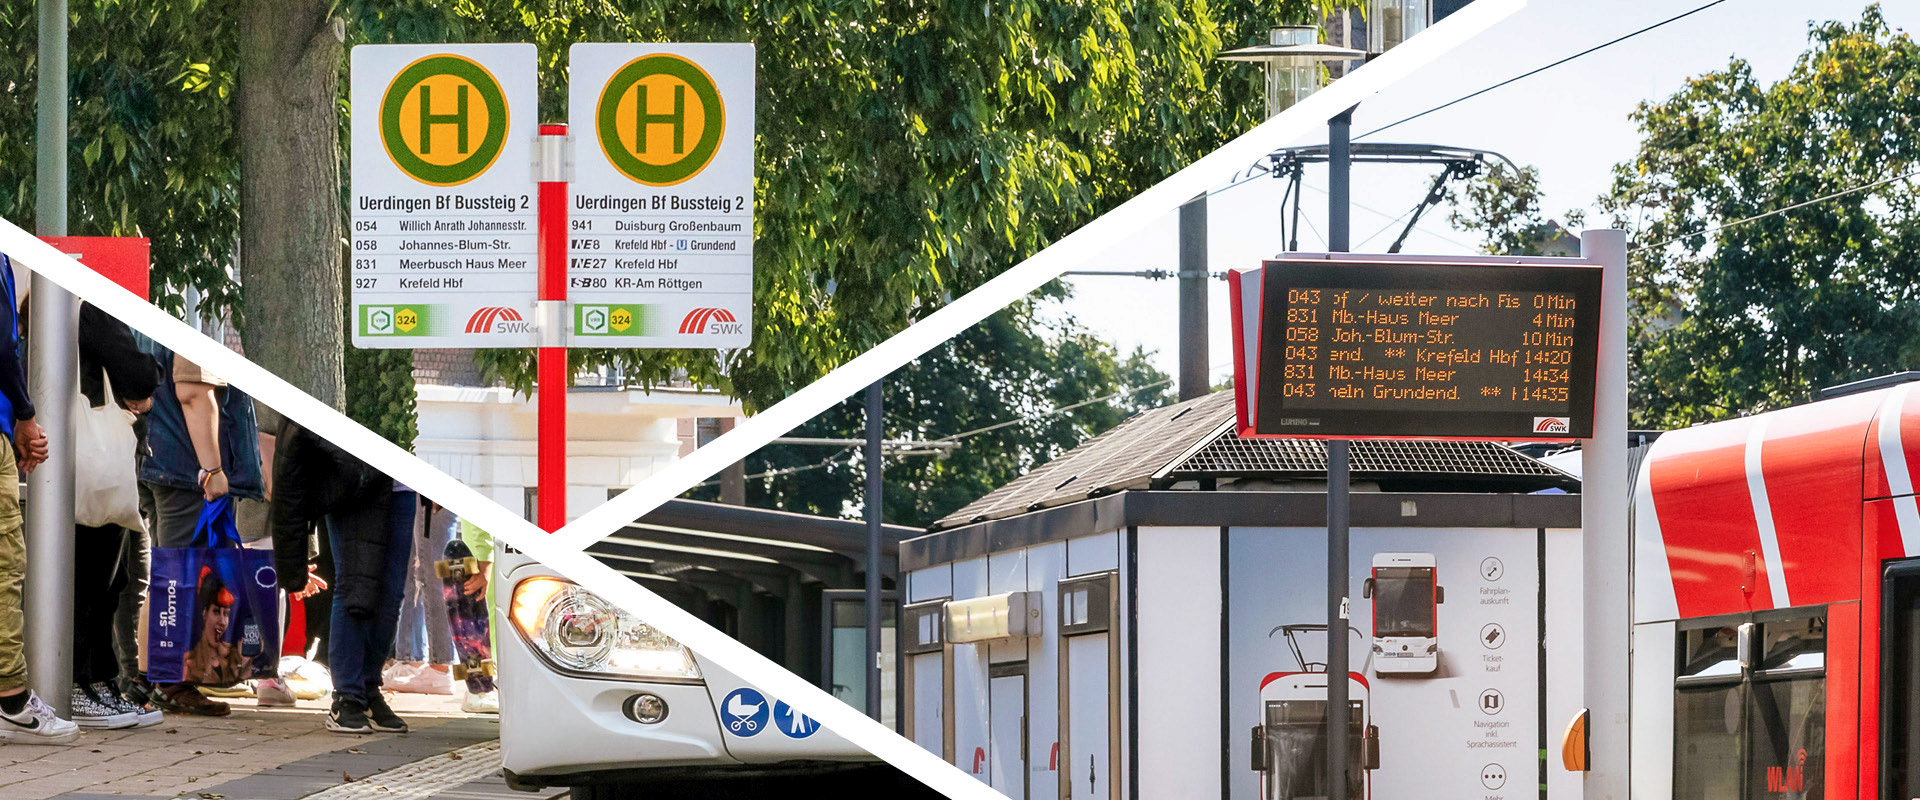 Collage mit Bildern von Haltestellen, zu sehen sind Schilder, Fahrgäste, Busse und Fahrgastinformationsanlagen